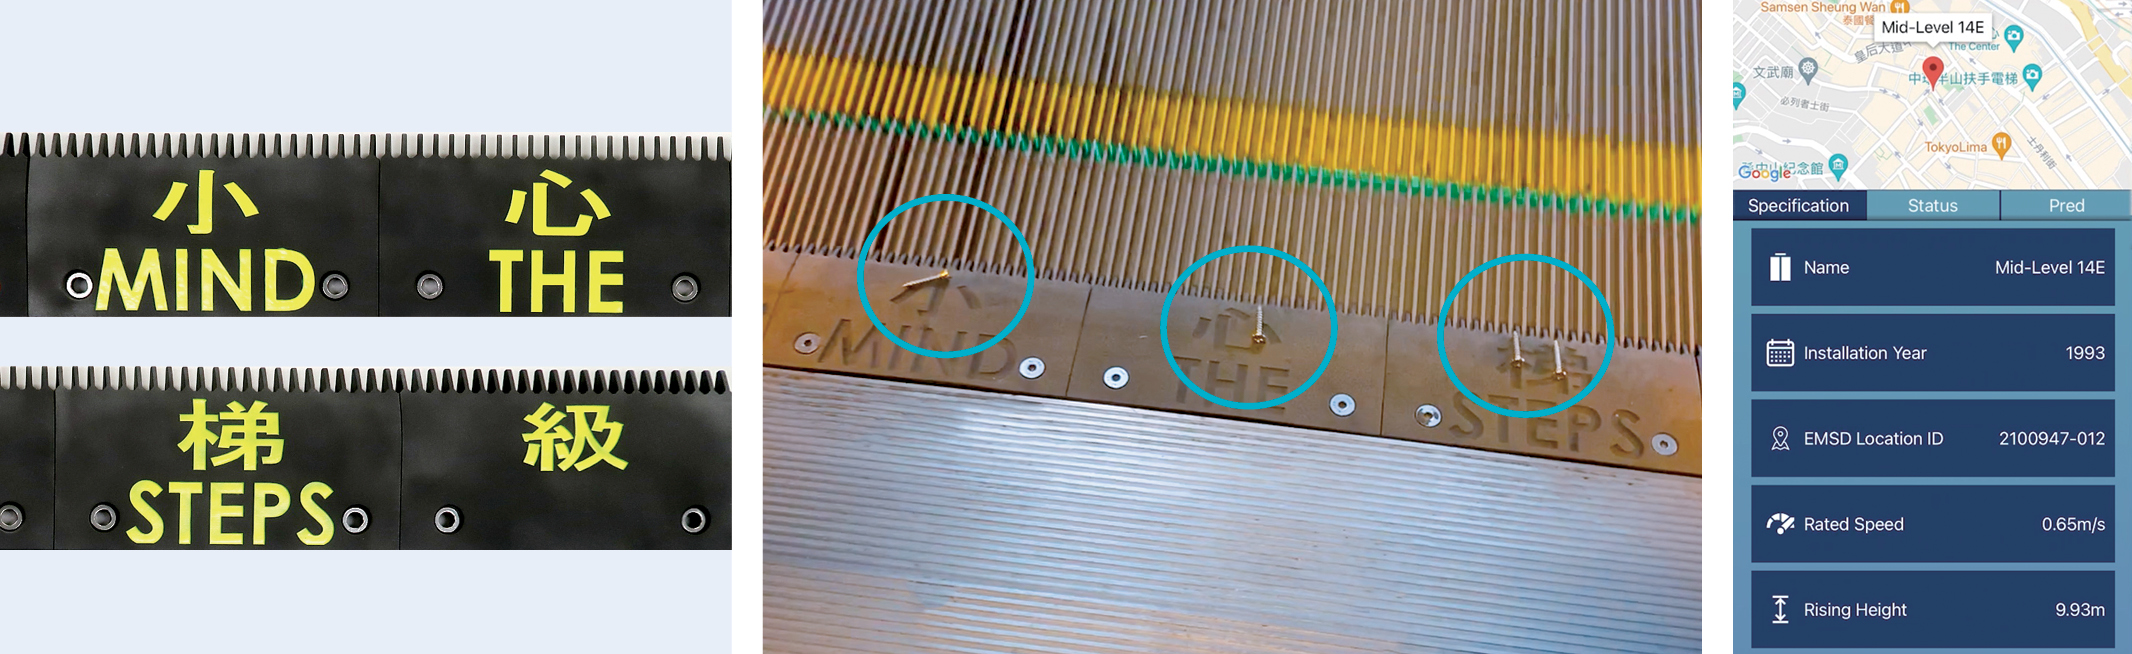 理大吴骏博士、工程师联同机电署和业界伙伴，成功开发出崭新扶手电梯梳齿板（左），
不但能够弹开扶手电梯上的外物（中），并可透过光纤传感器实时监测电梯的运作情况（右）。